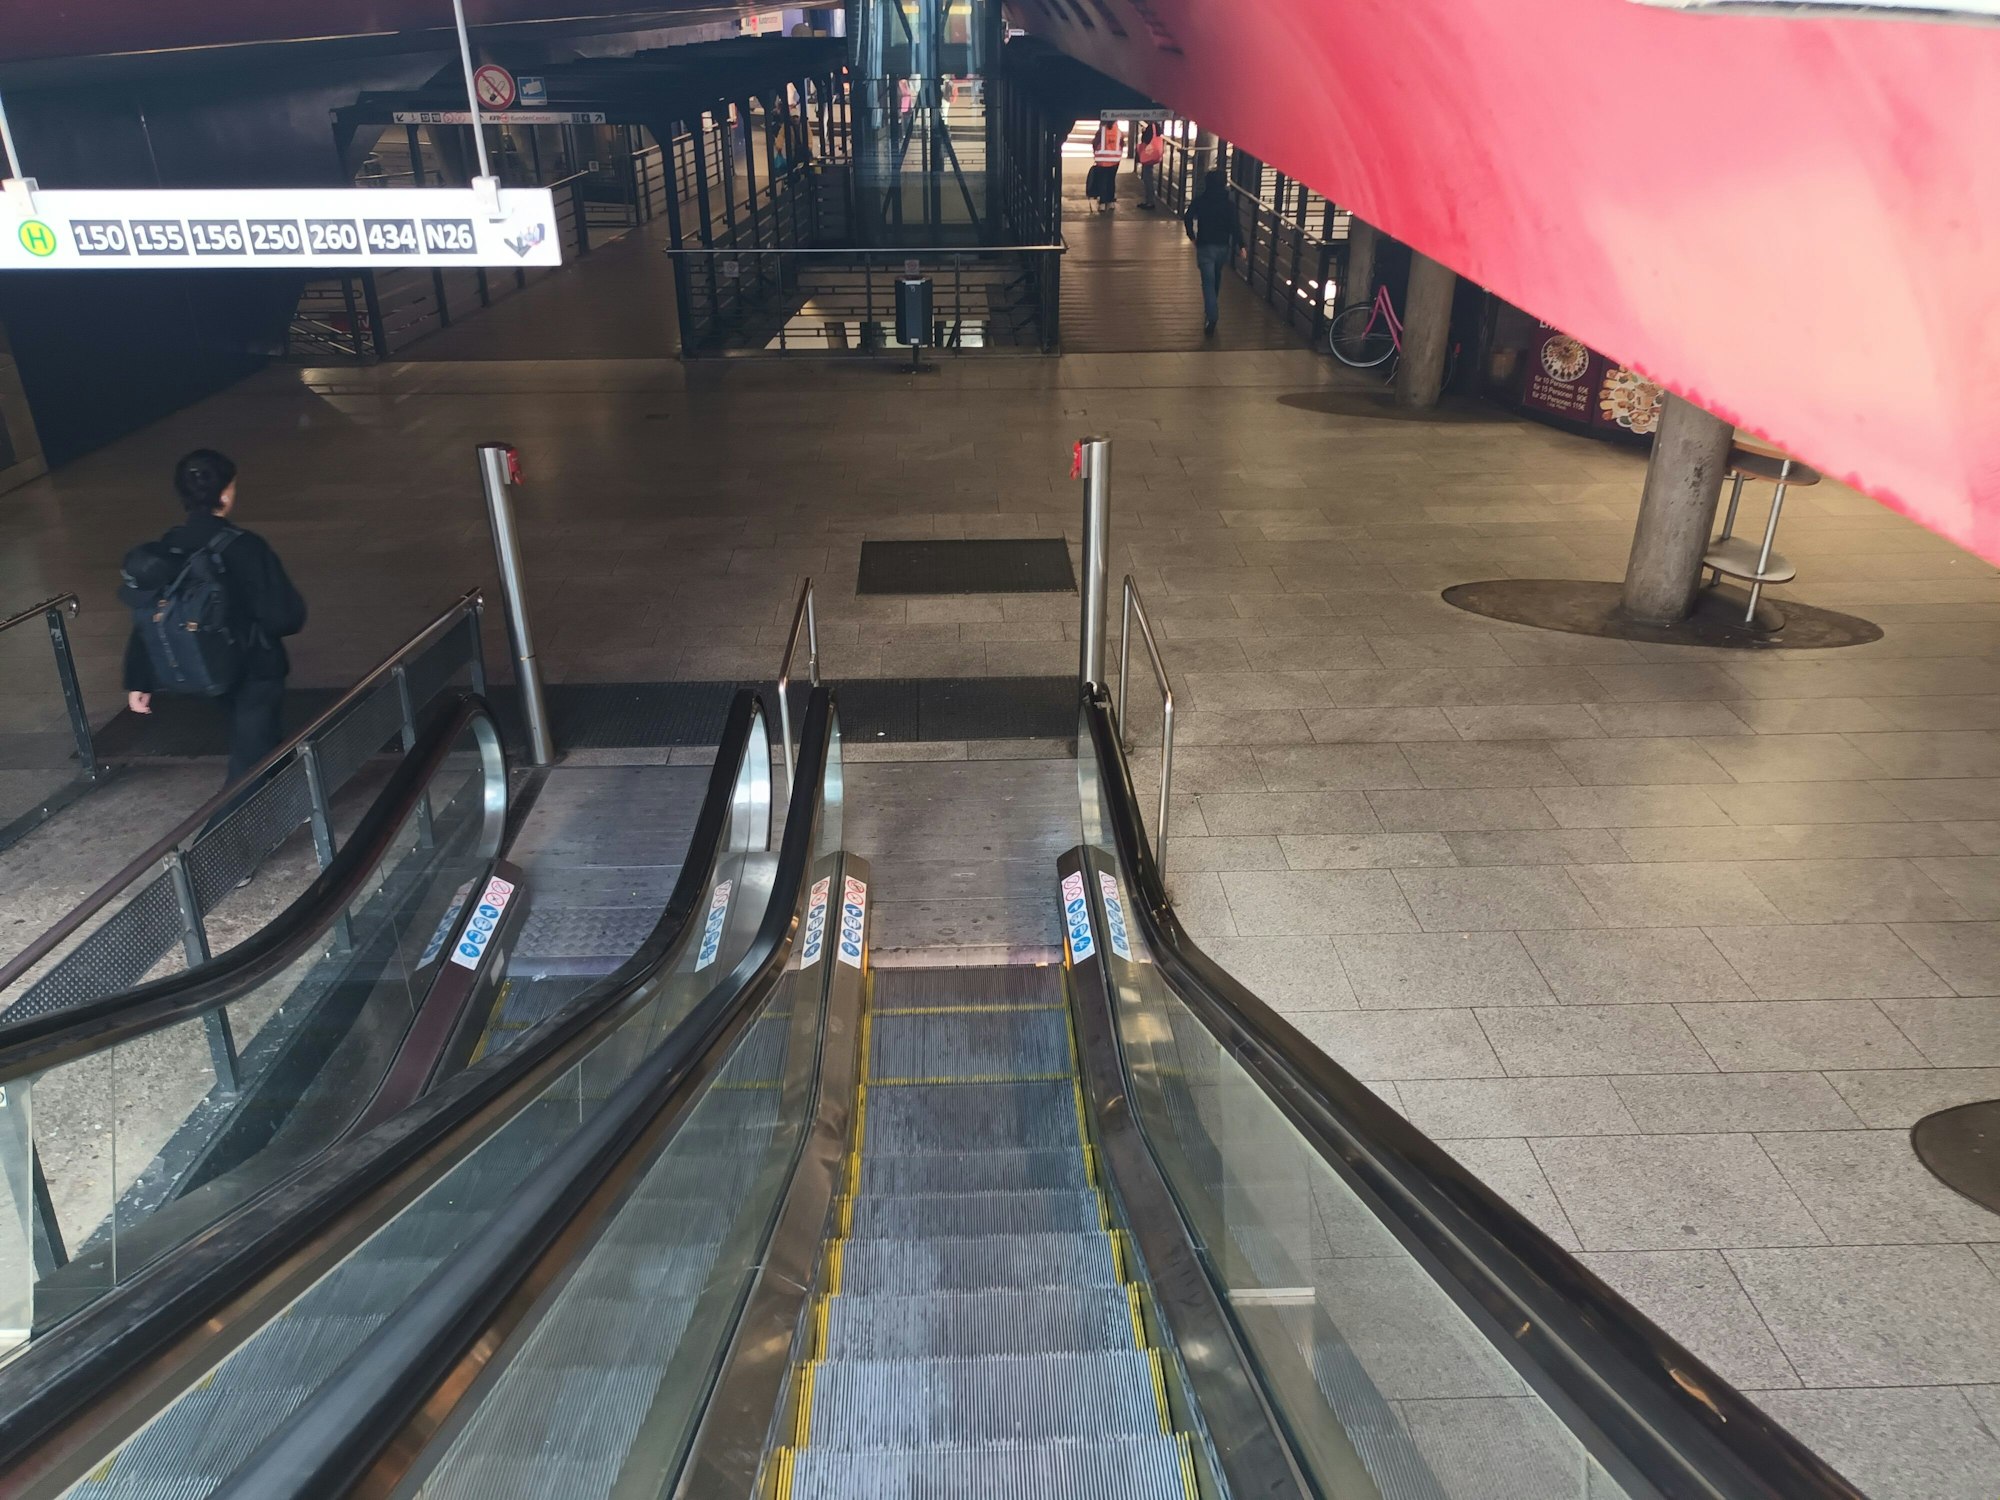 Treppenabgang am Wiener Platz in Köln. Einige Menschen strömen zu den KVB-Bahnen.